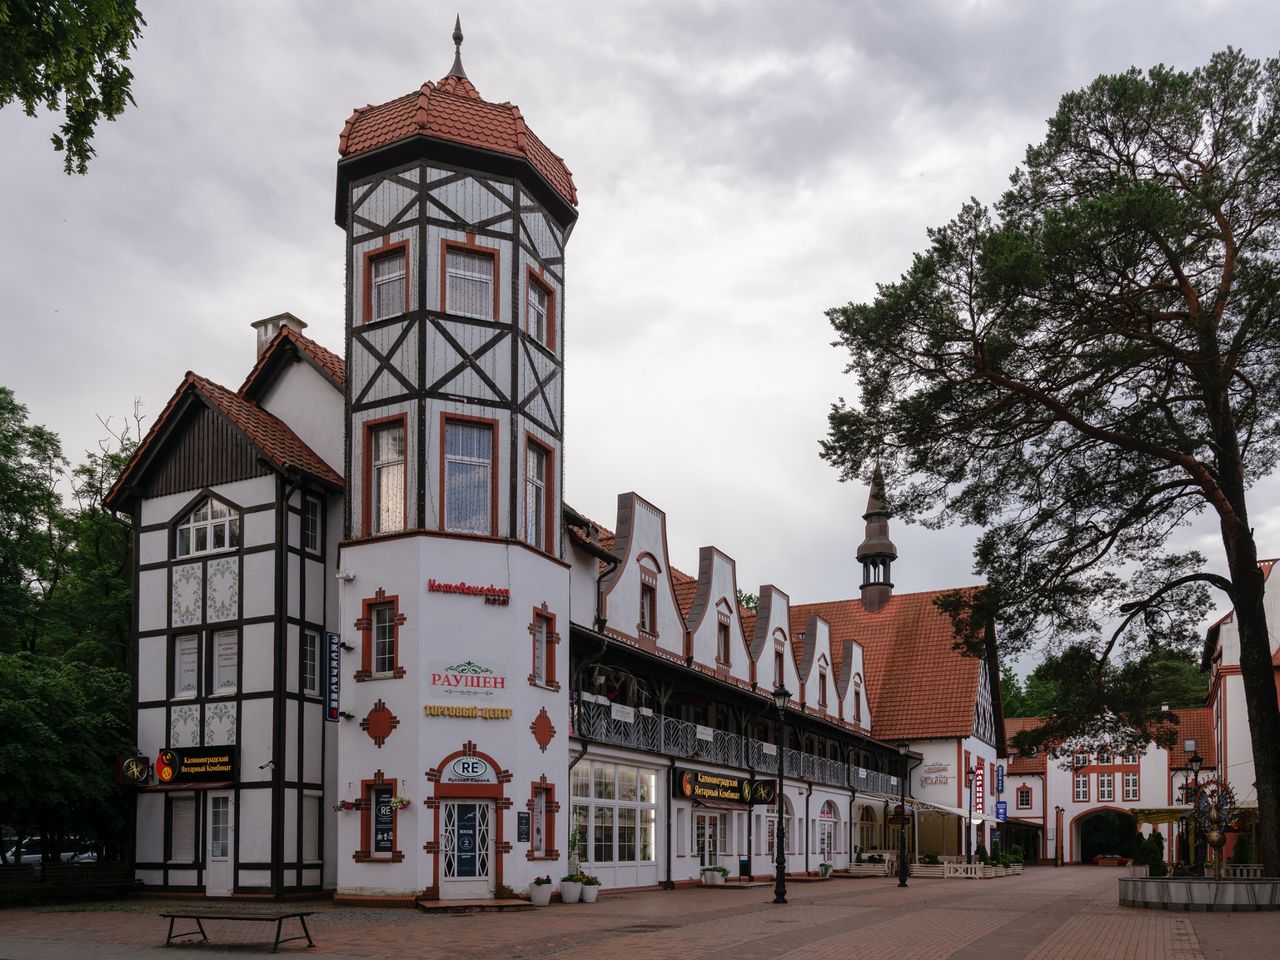 Города-курорты Балтики: Зеленоградск и Светлогорск | Цена 11600₽, отзывы, описание экскурсии